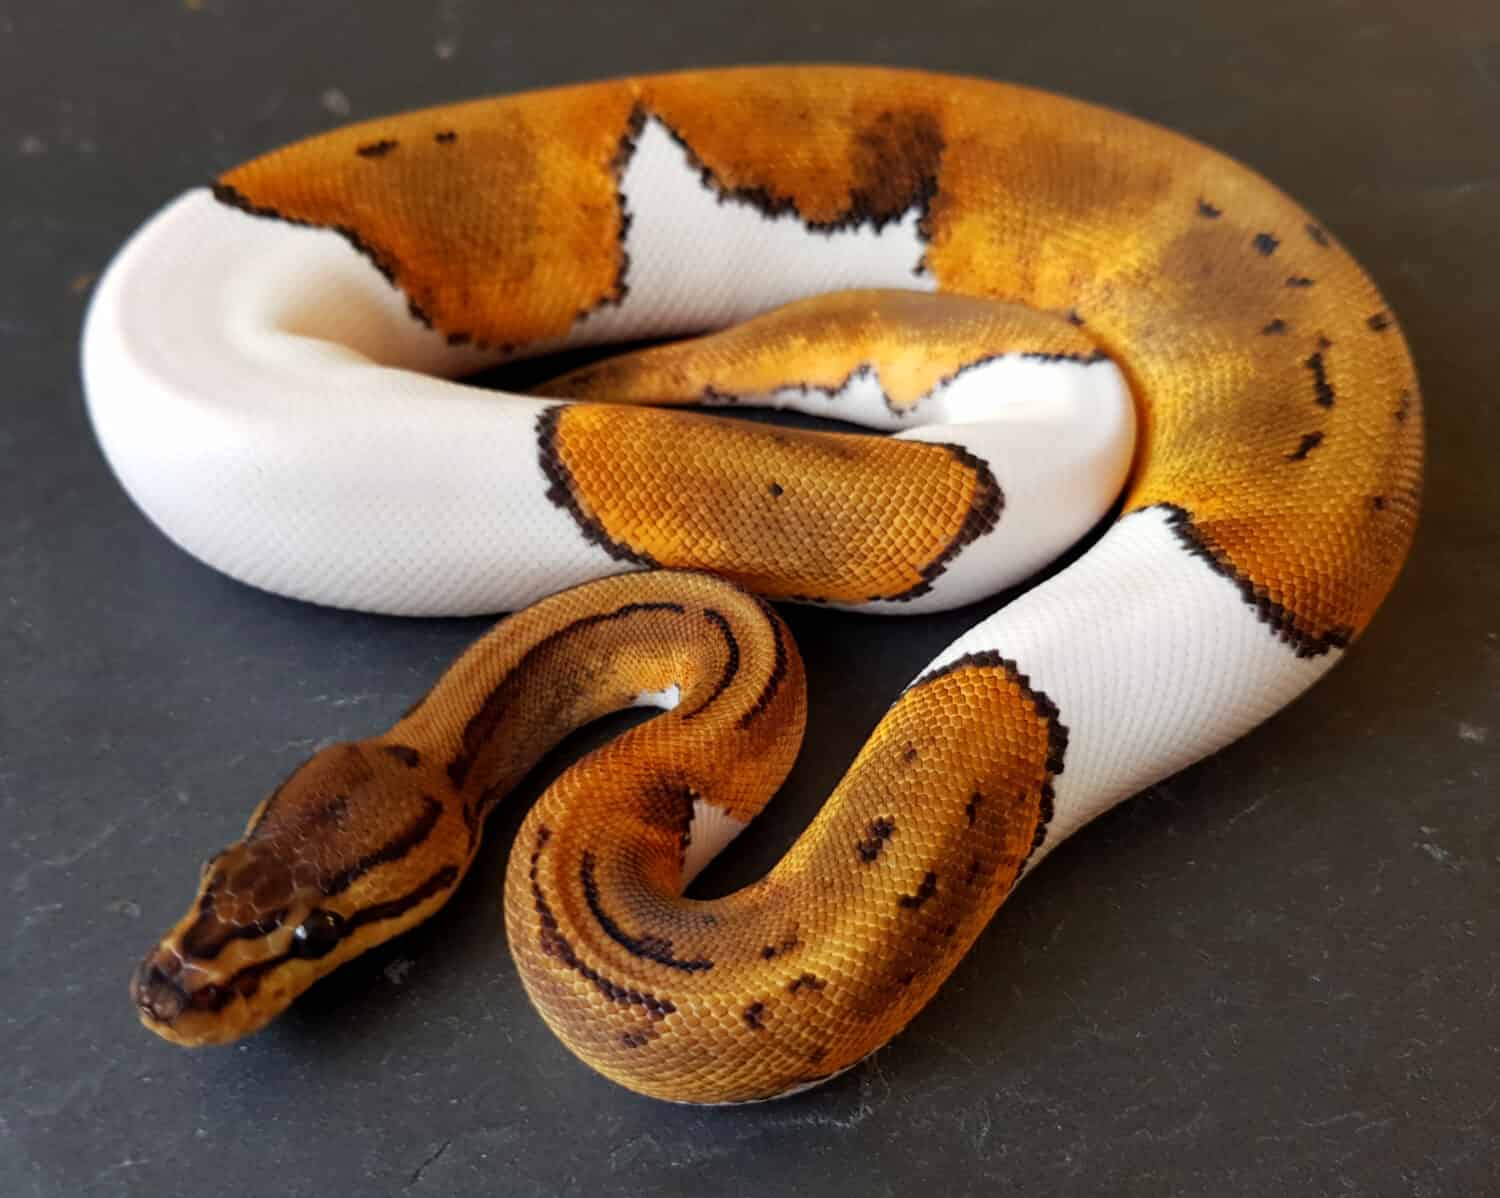 Pinstripe Pied Ball Python, animale rettile serpente reale pezzato